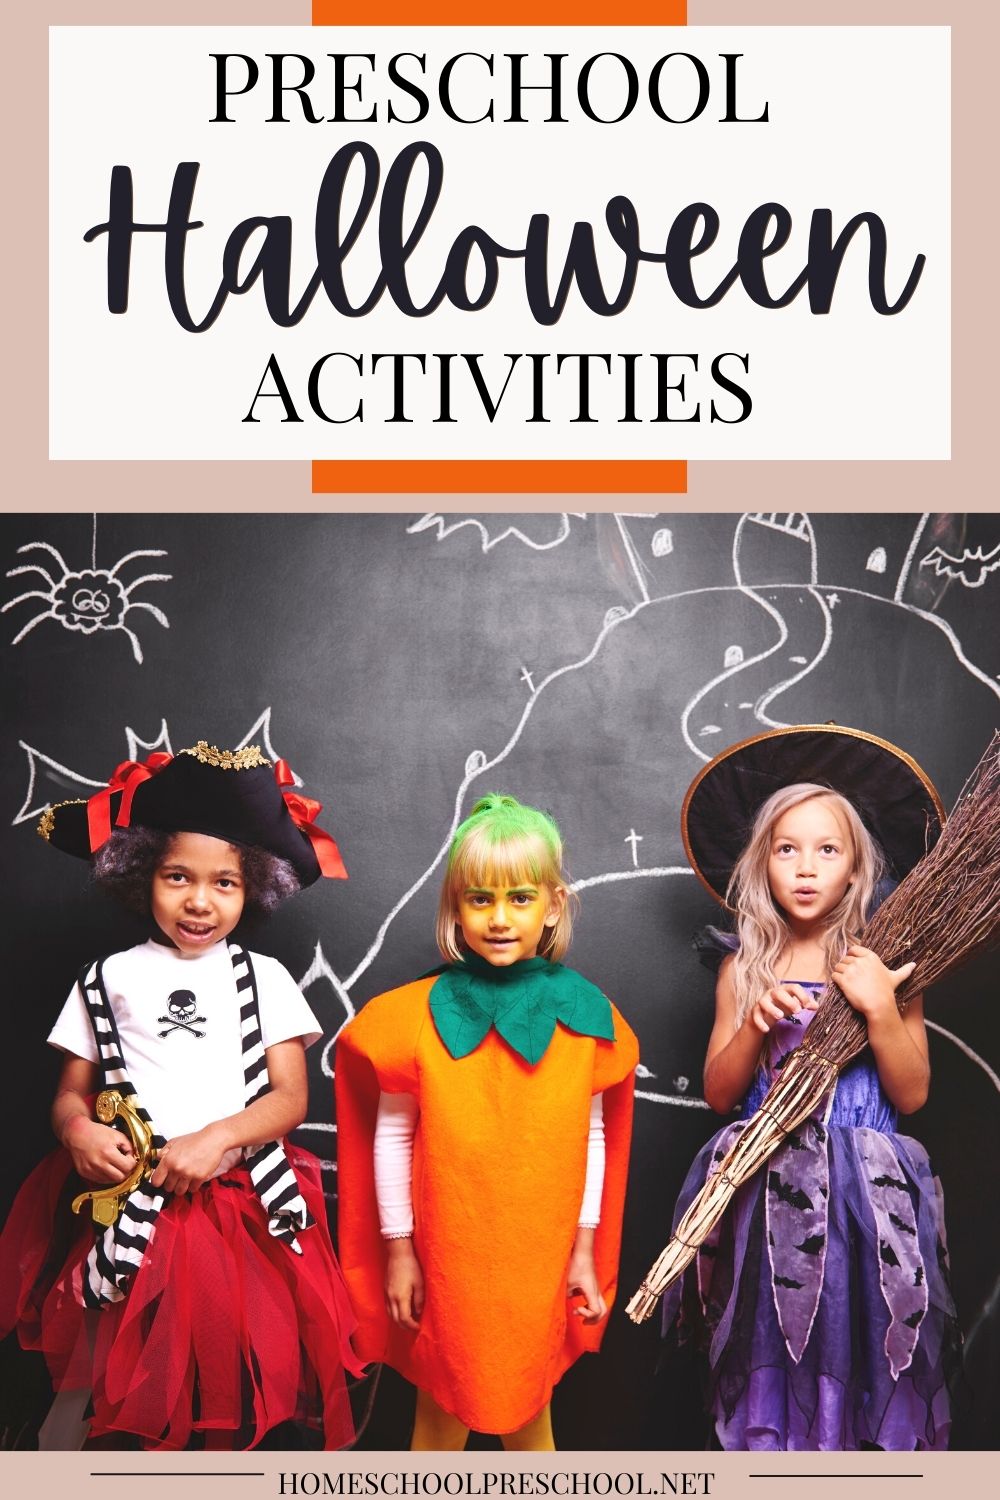 preschool-halloween-activities Halloween Preschool Activities and Ideas